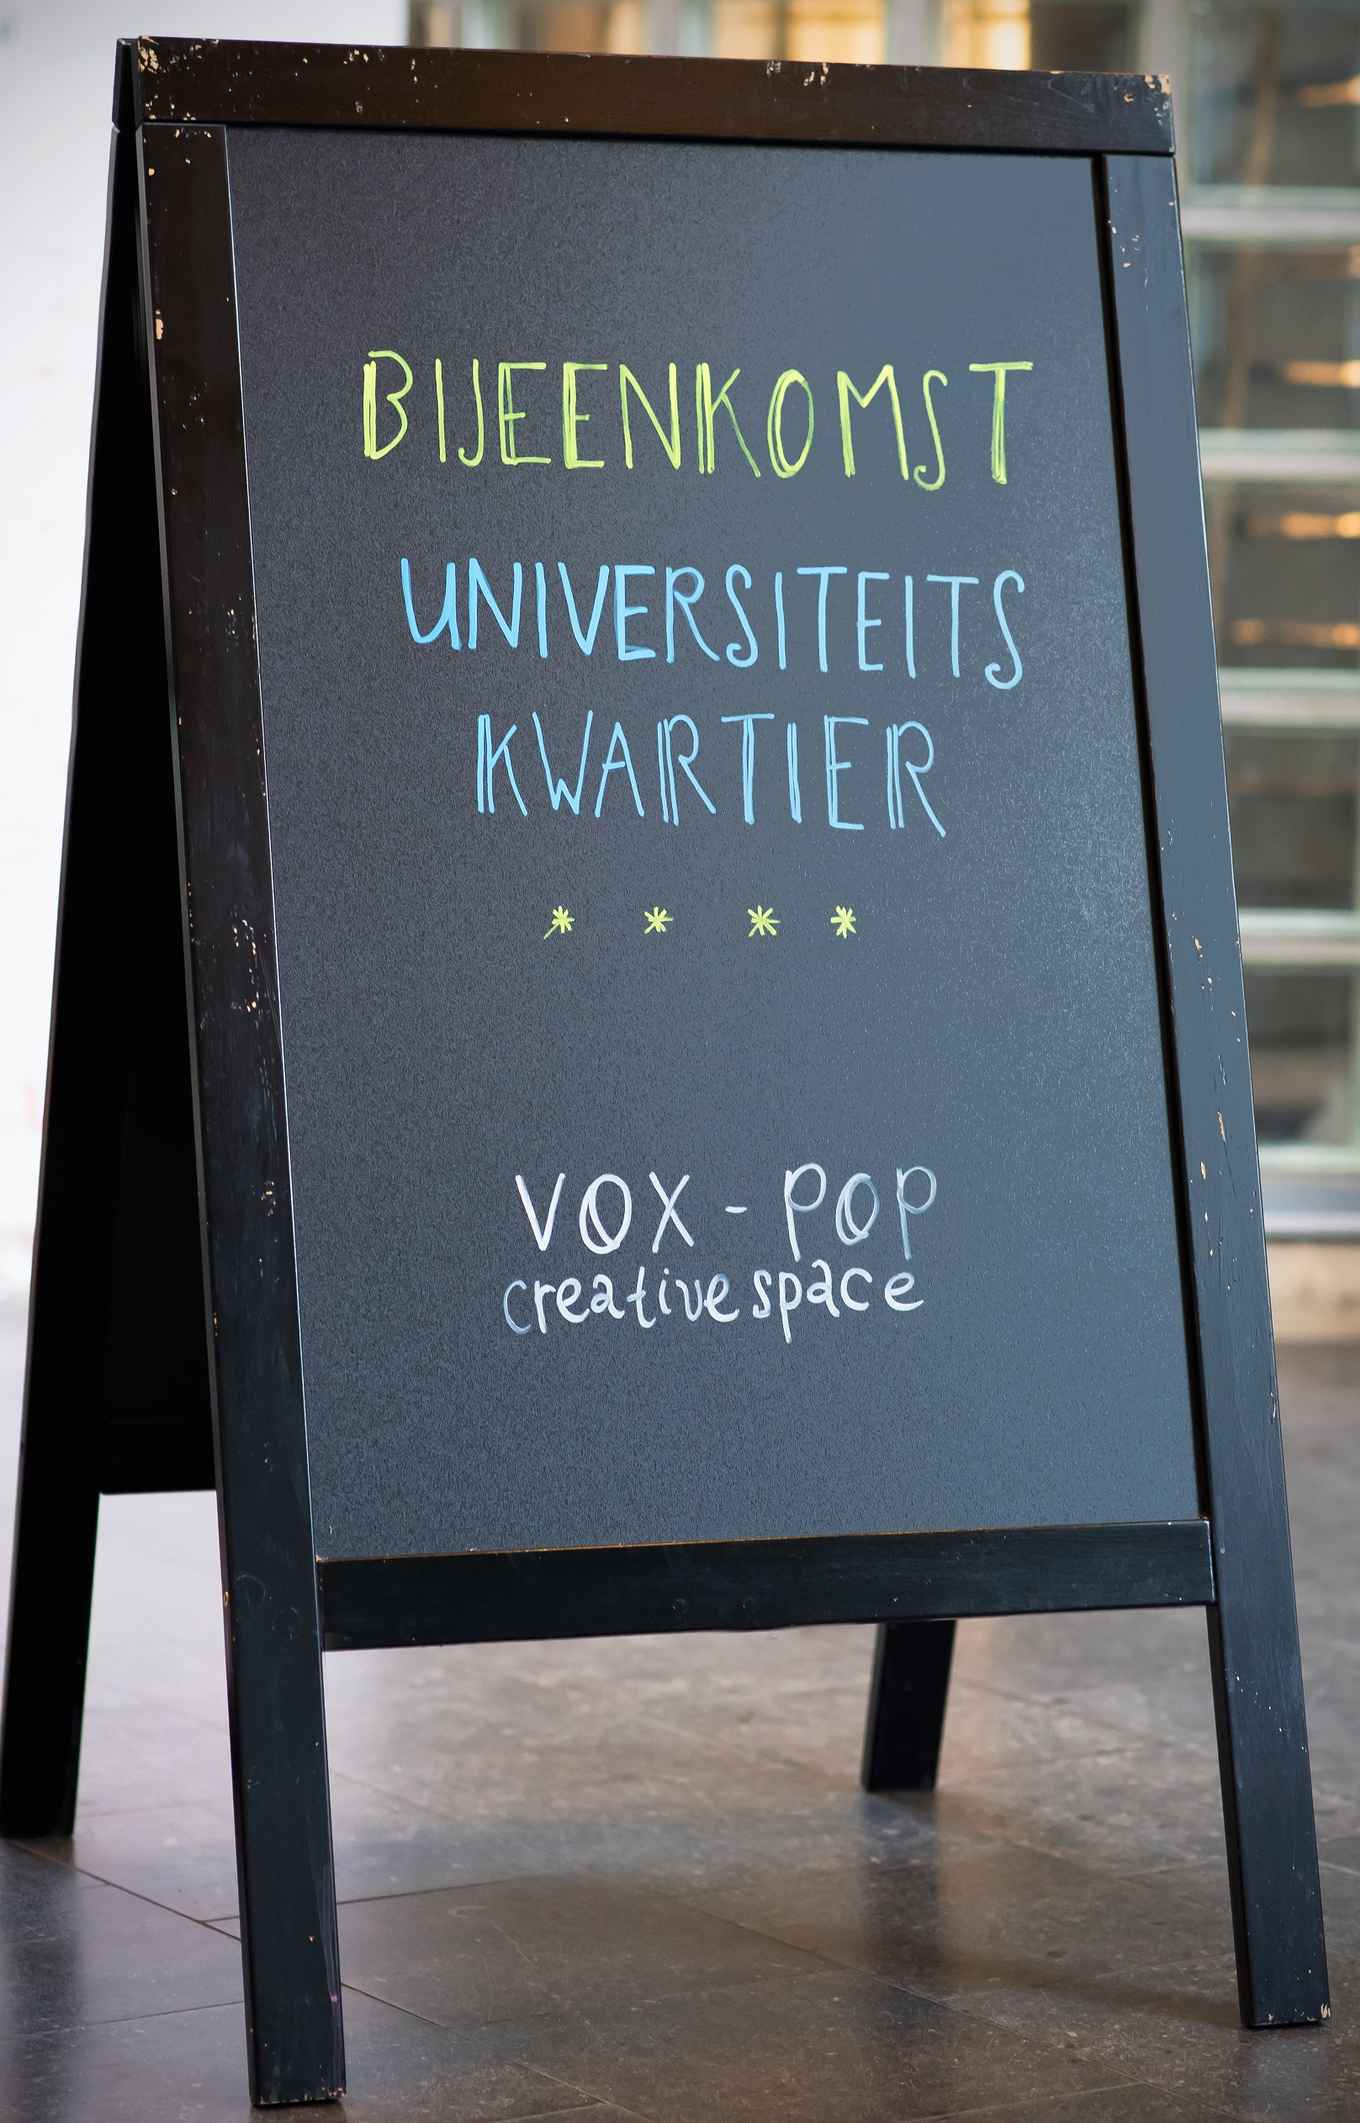 Bijeenkomst VOX-POP Universiteitskwartier